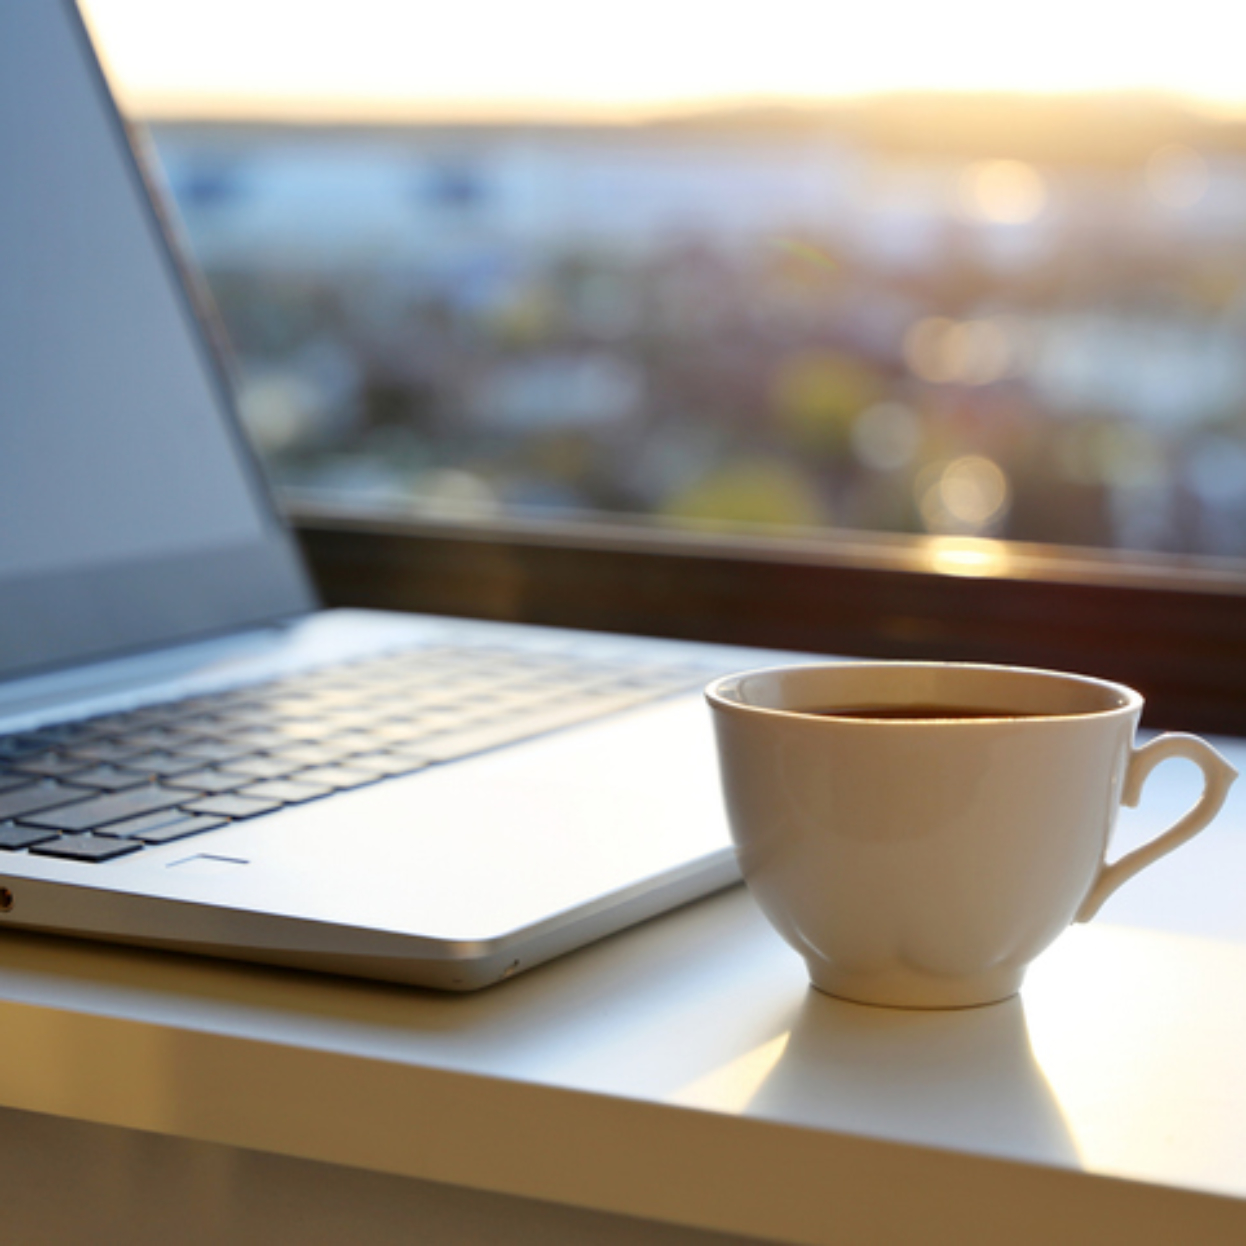 Kahvikuppi ja kannettava tietokone pöydällä auringon noustessa